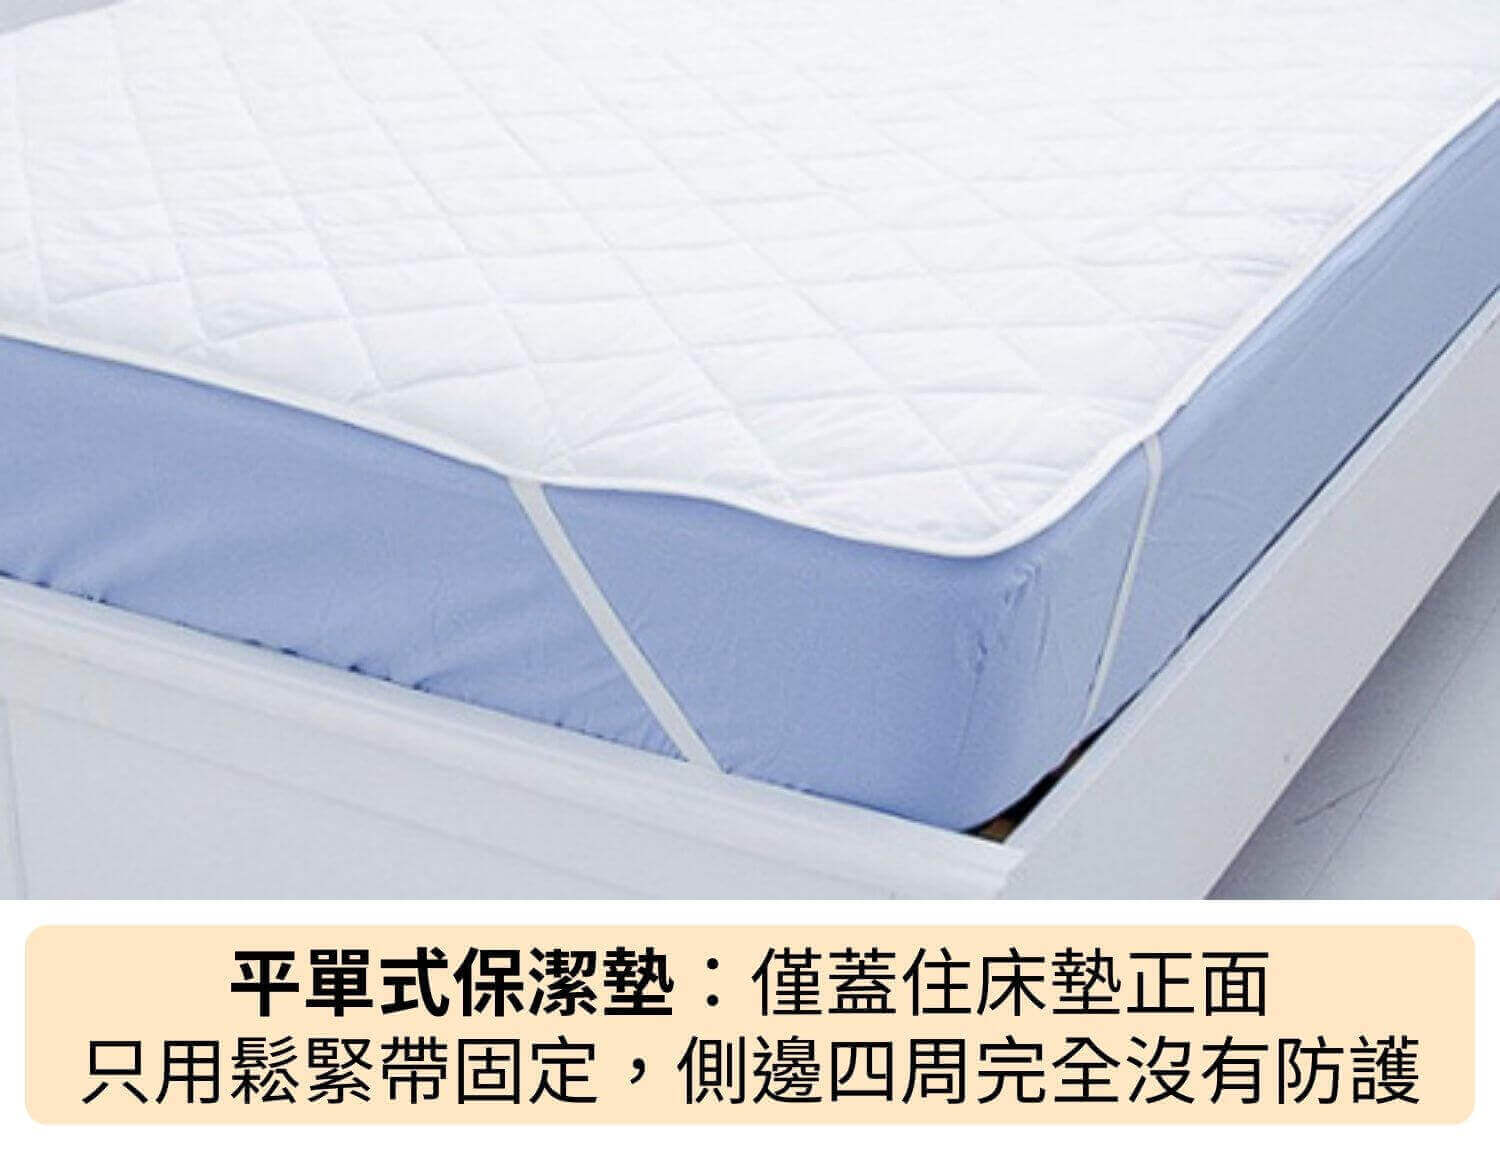 平單式保潔墊：僅蓋住床墊正面，只用鬆緊帶固定，側邊四周完全沒有防護